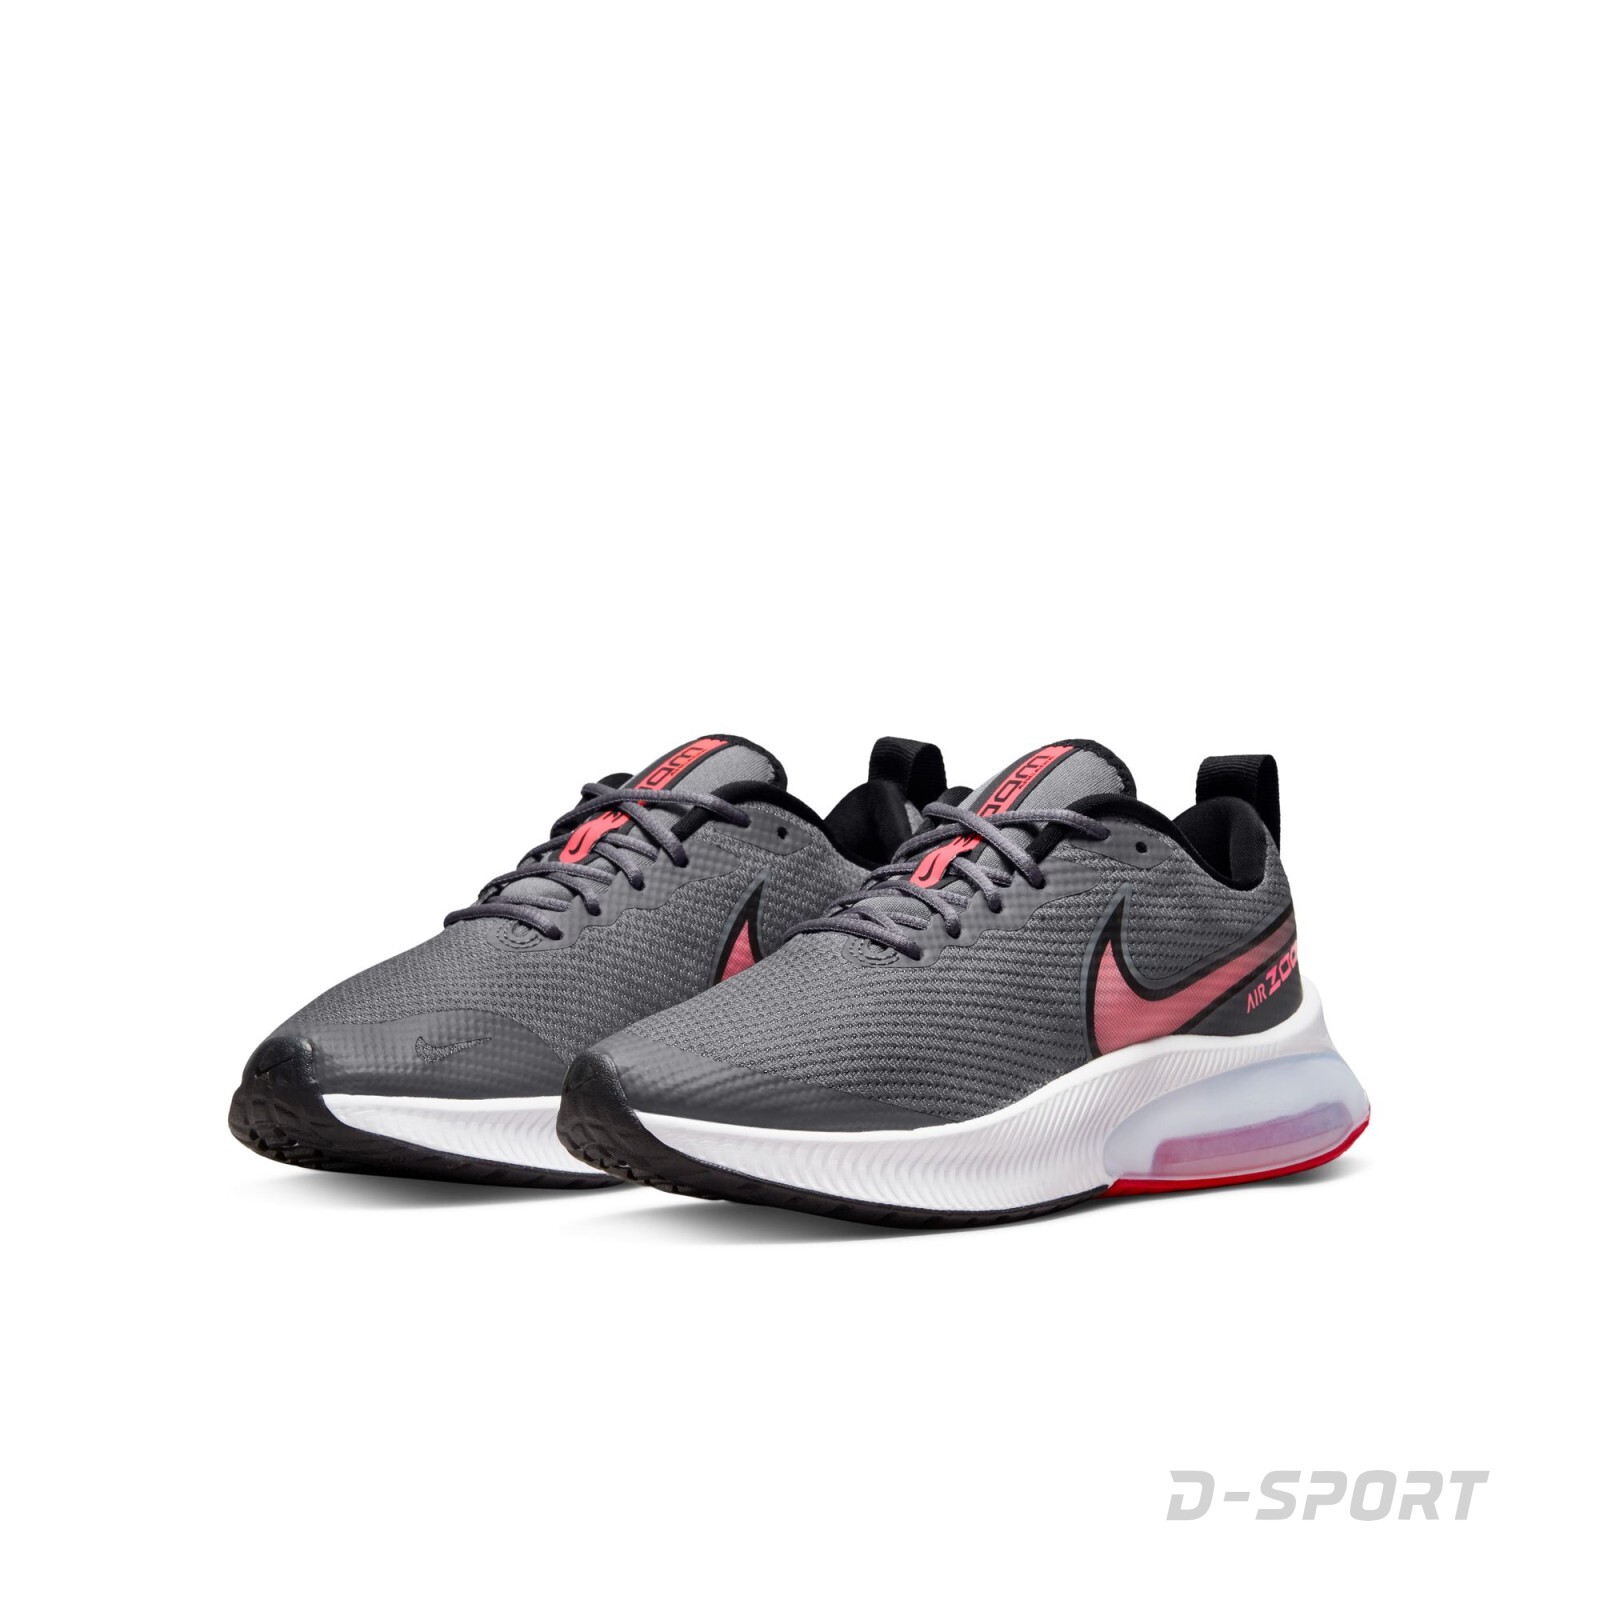 Nike Air Zoom Arcadia